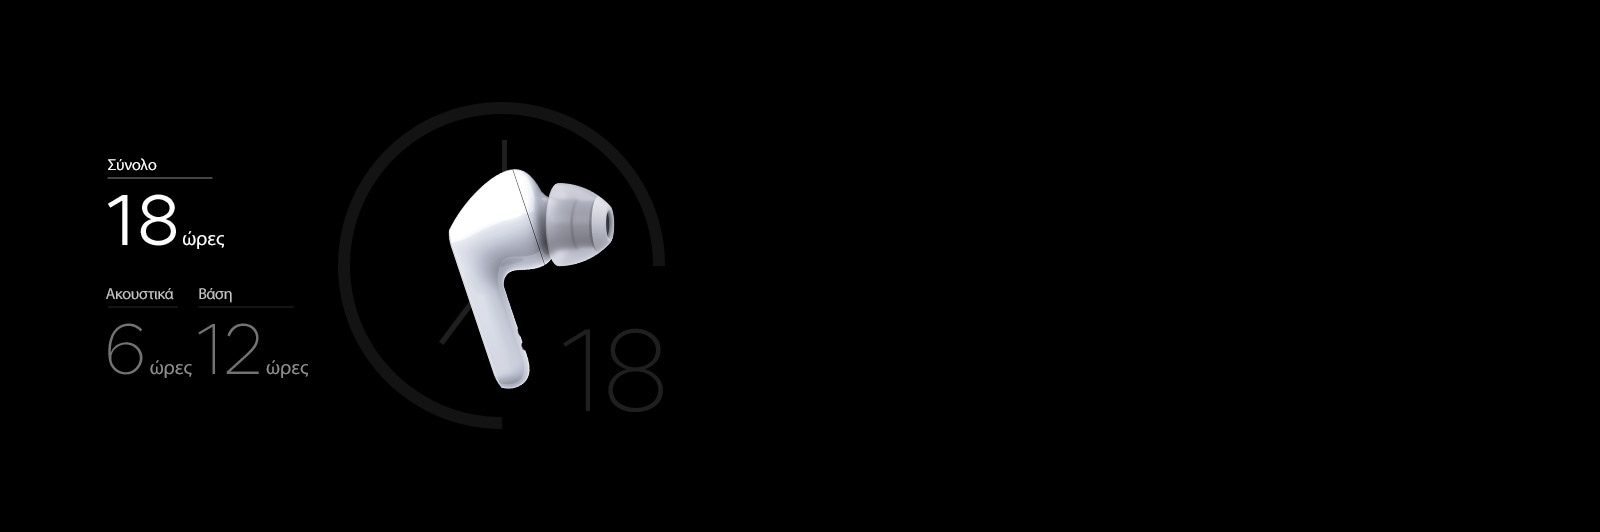 Εικόνα με ένα λευκό ακουστικό με αριθμούς δίπλα του, οι οποίοι δείχνουν τη διάρκεια της μπαταρίας